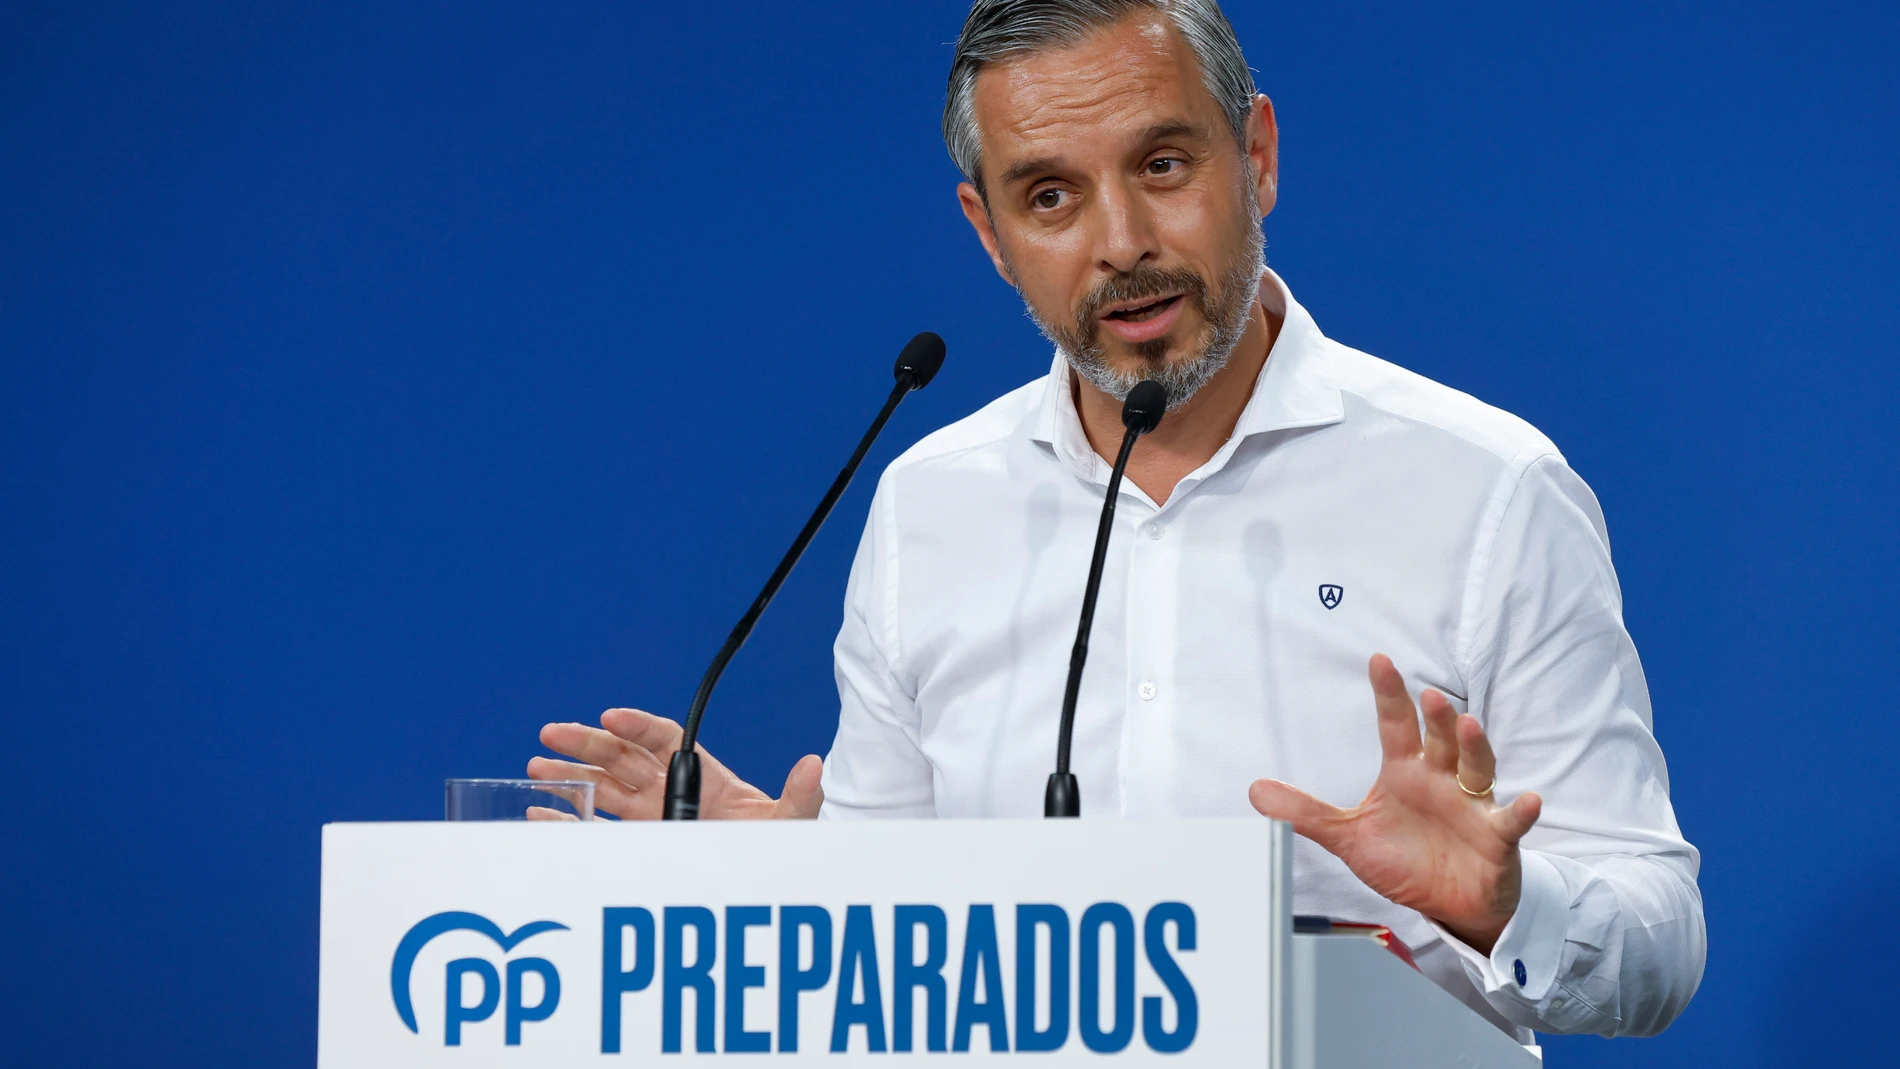 El vicesecretario de Economía del Partido Popular, Juan Bravo, durante su intervención en la rueda de prensa en la sede nacional del partido, este lunes en Madrid. EFE/ Chema Moya